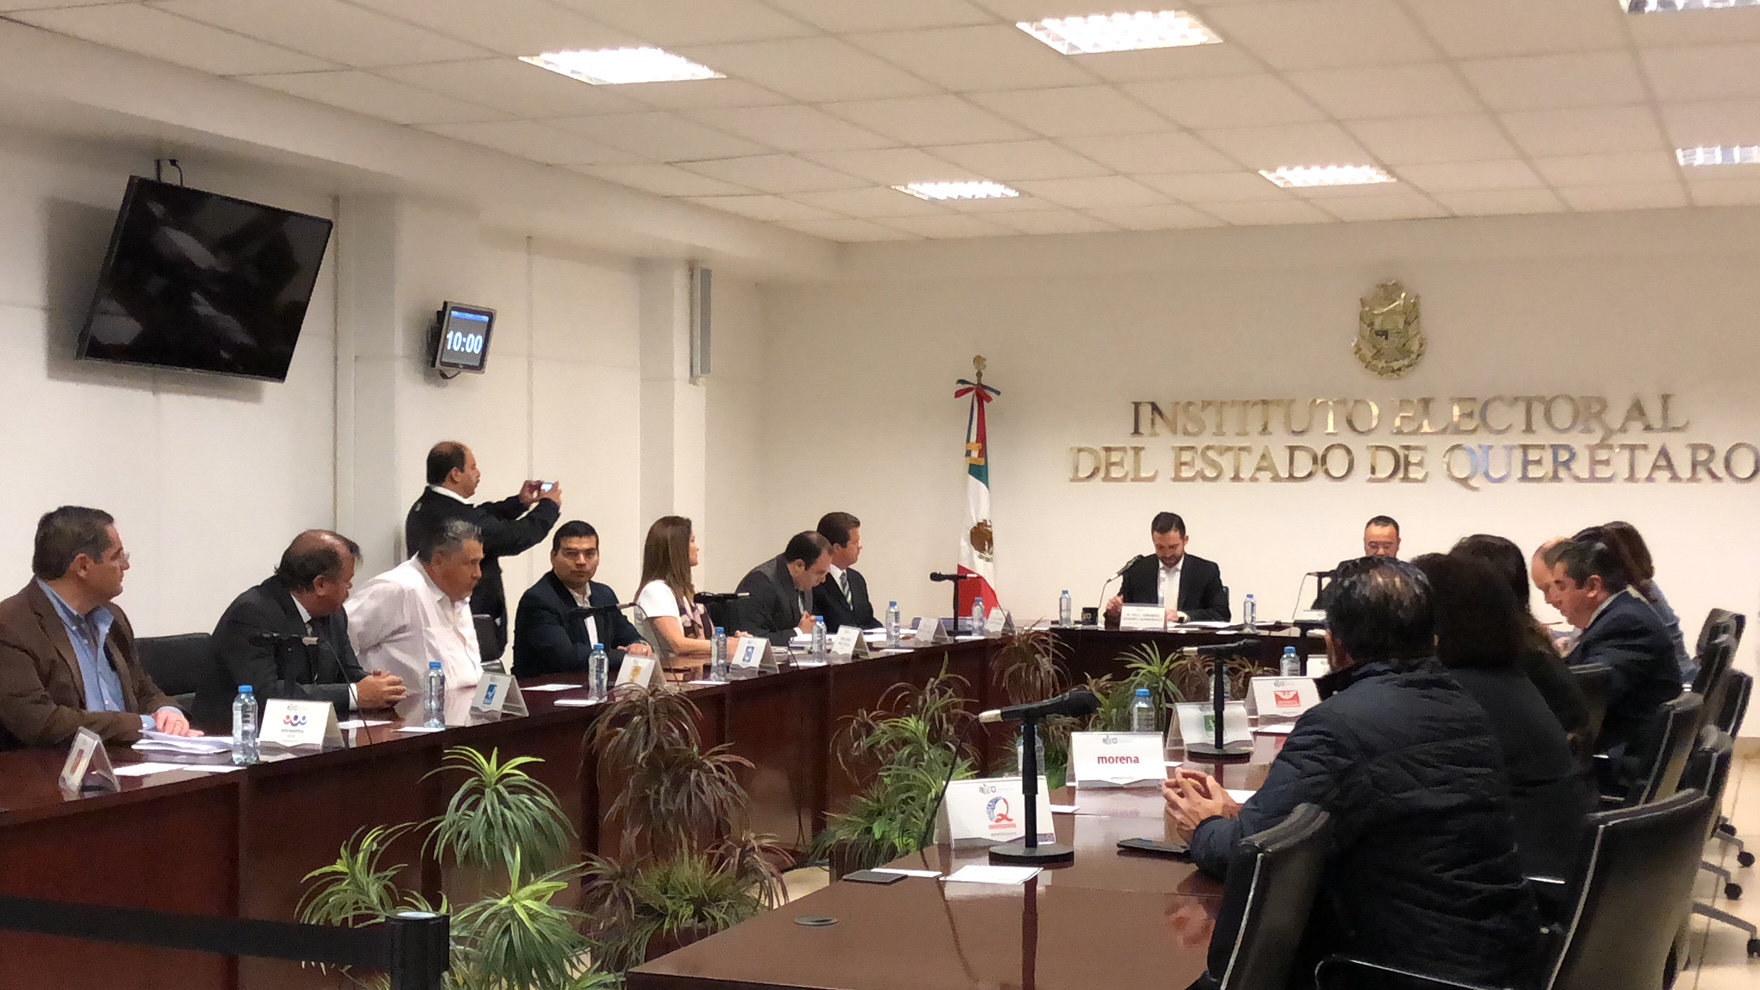  Solo 35 empresas estarán autorizadas para realizar encuestas de salida en Querétaro